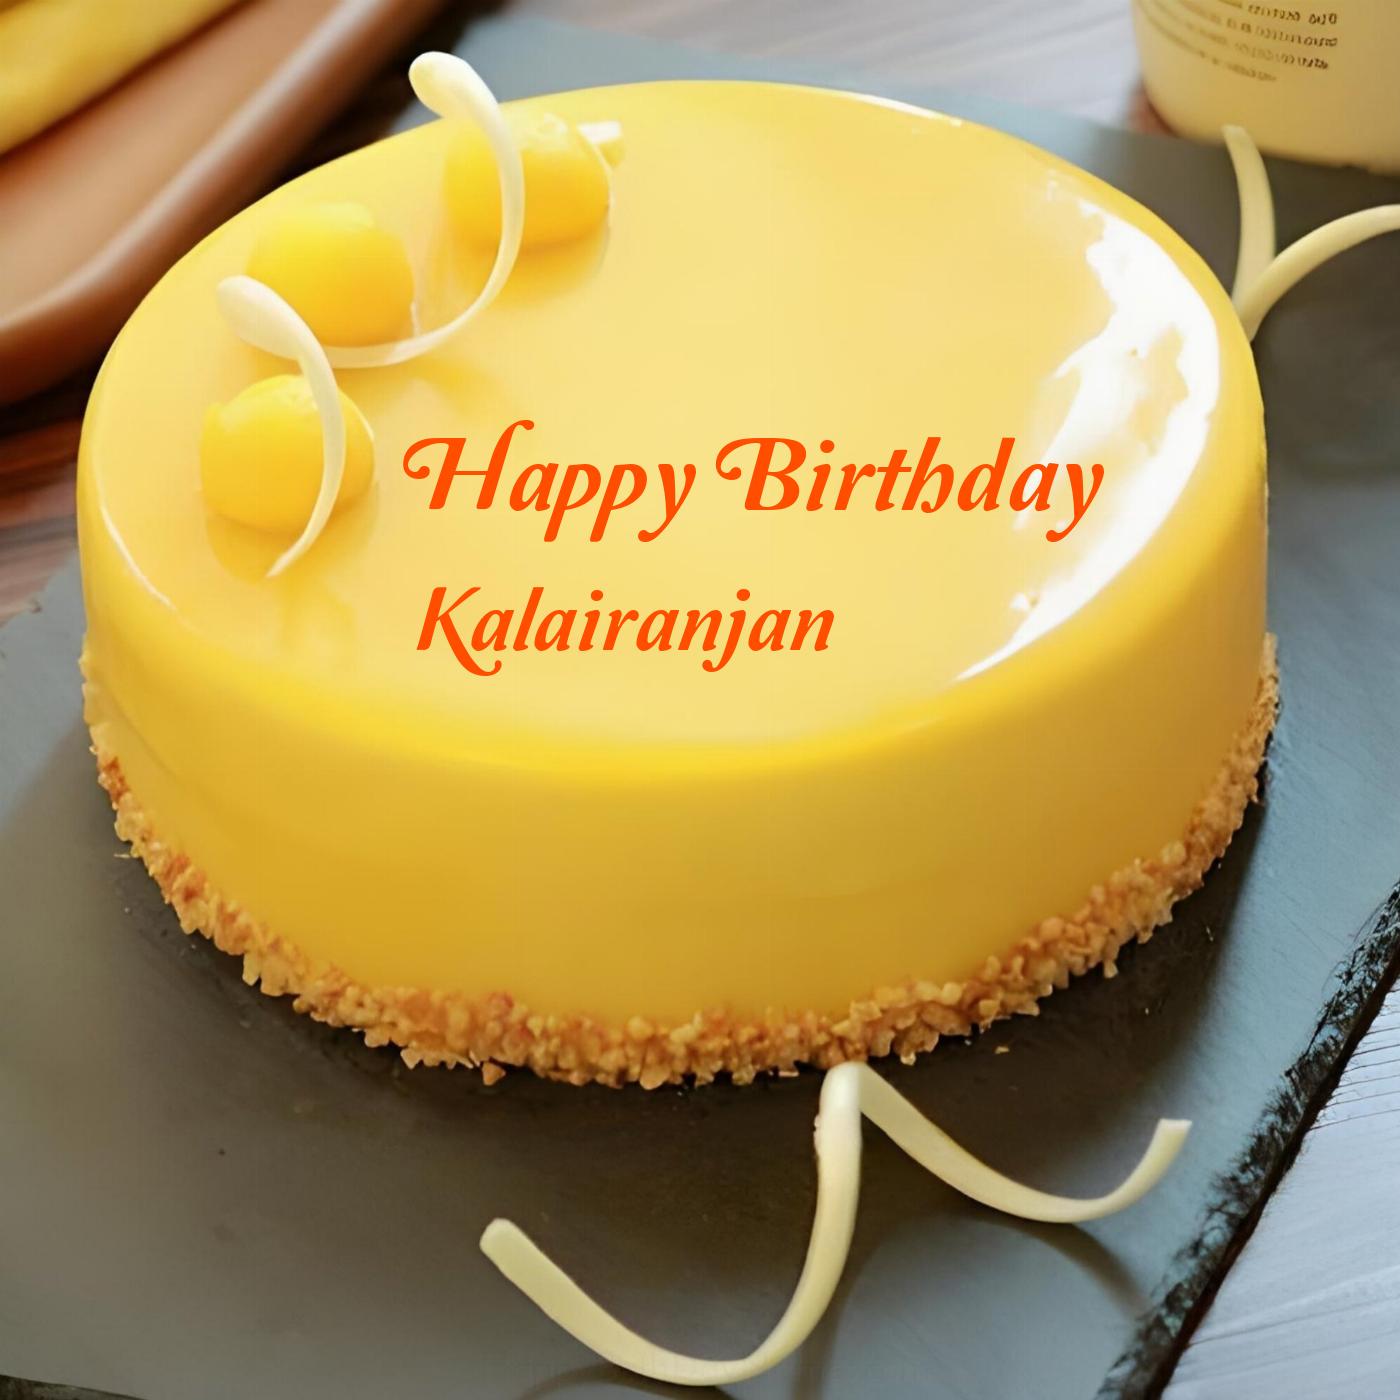 Happy Birthday Kalairanjan Beautiful Yellow Cake